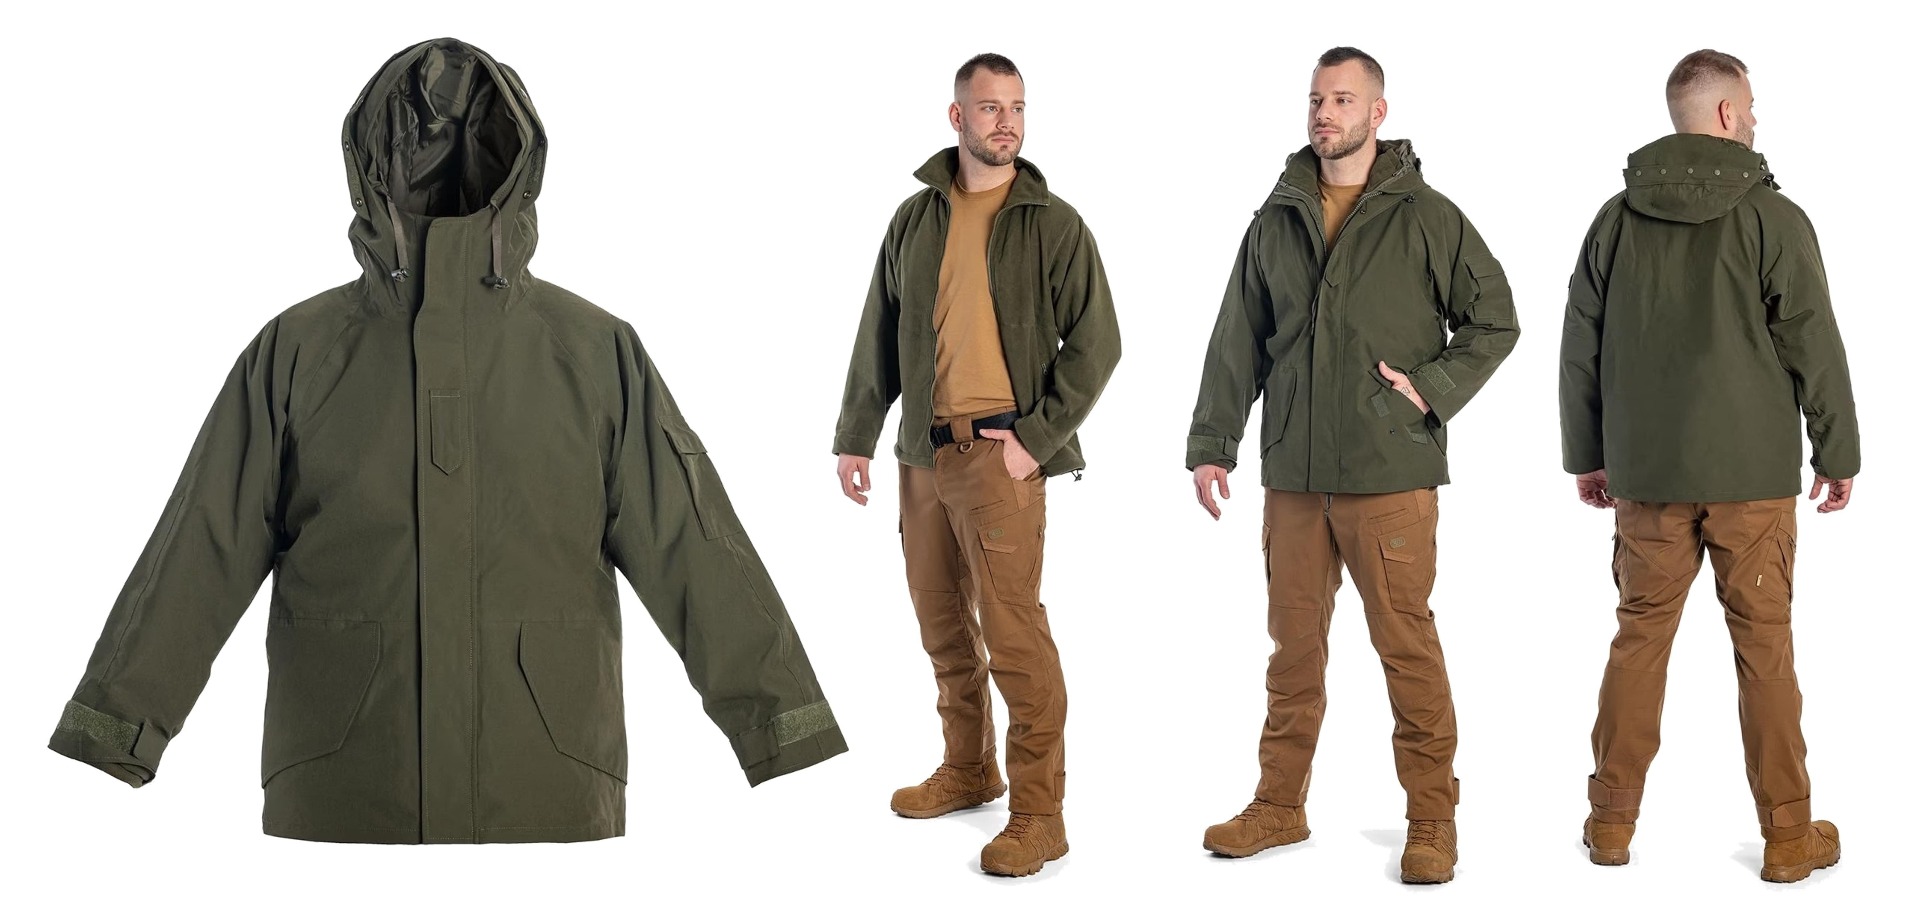 Izvrstna vojaška tri-slojna jakna, odporna na dež in sneg. Podložena s flisom za maksimalno toploto. Popolna izbira za aktivnosti na prostem v vseh vremenskih razmerah. Udobna, funkcionalna in vrhunske kakovosti.